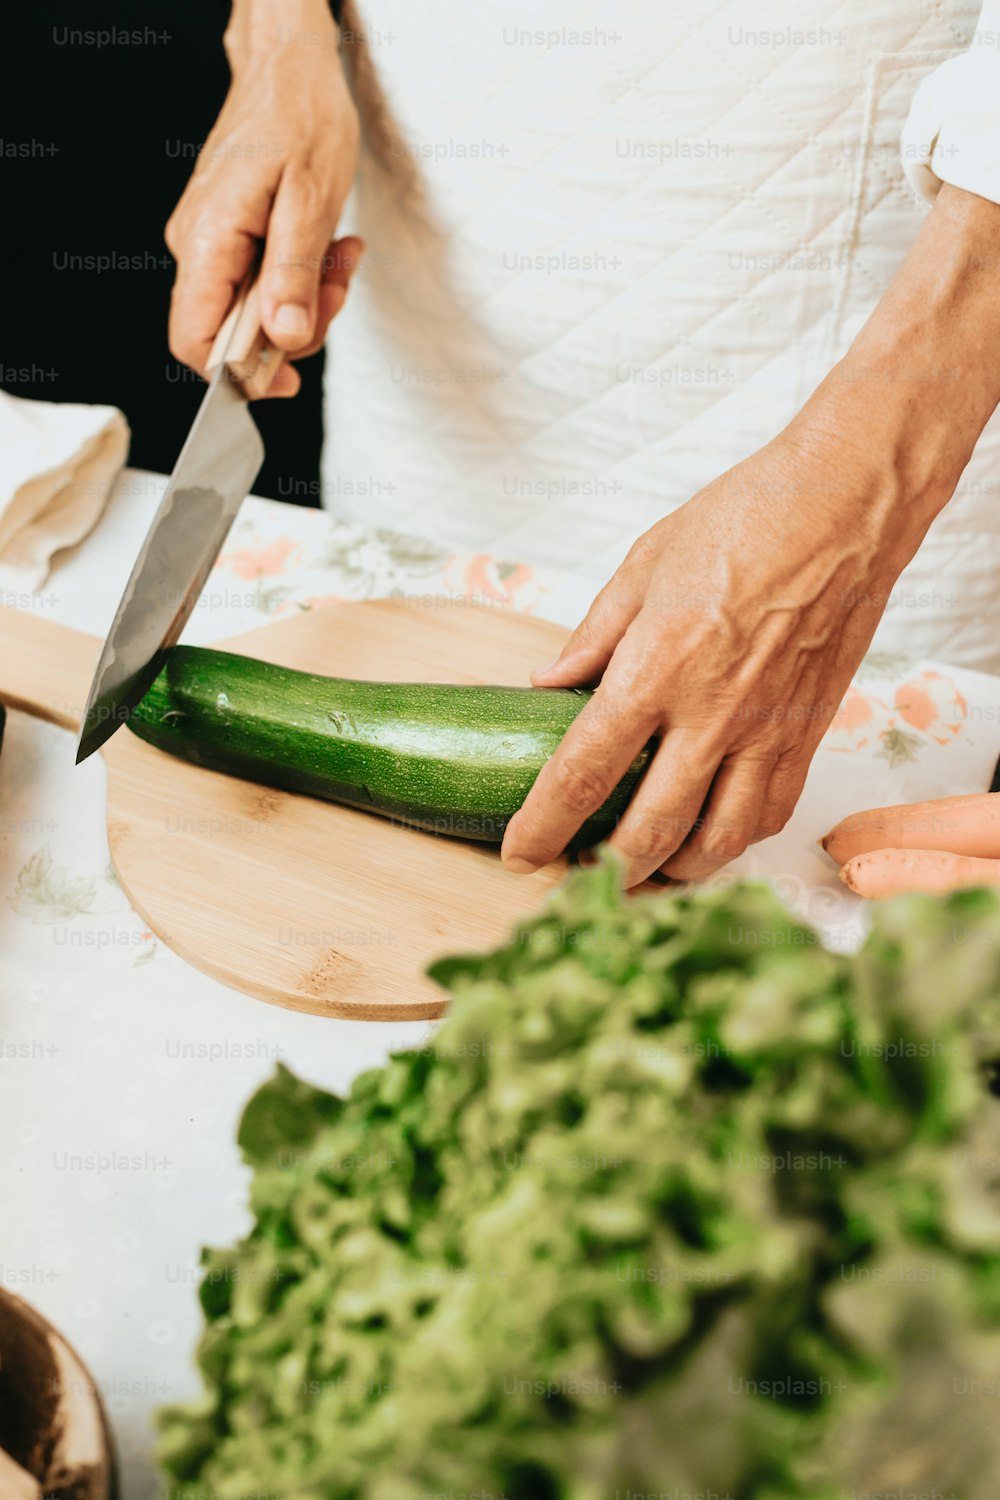 a person cutting a cucumber on a cutting board